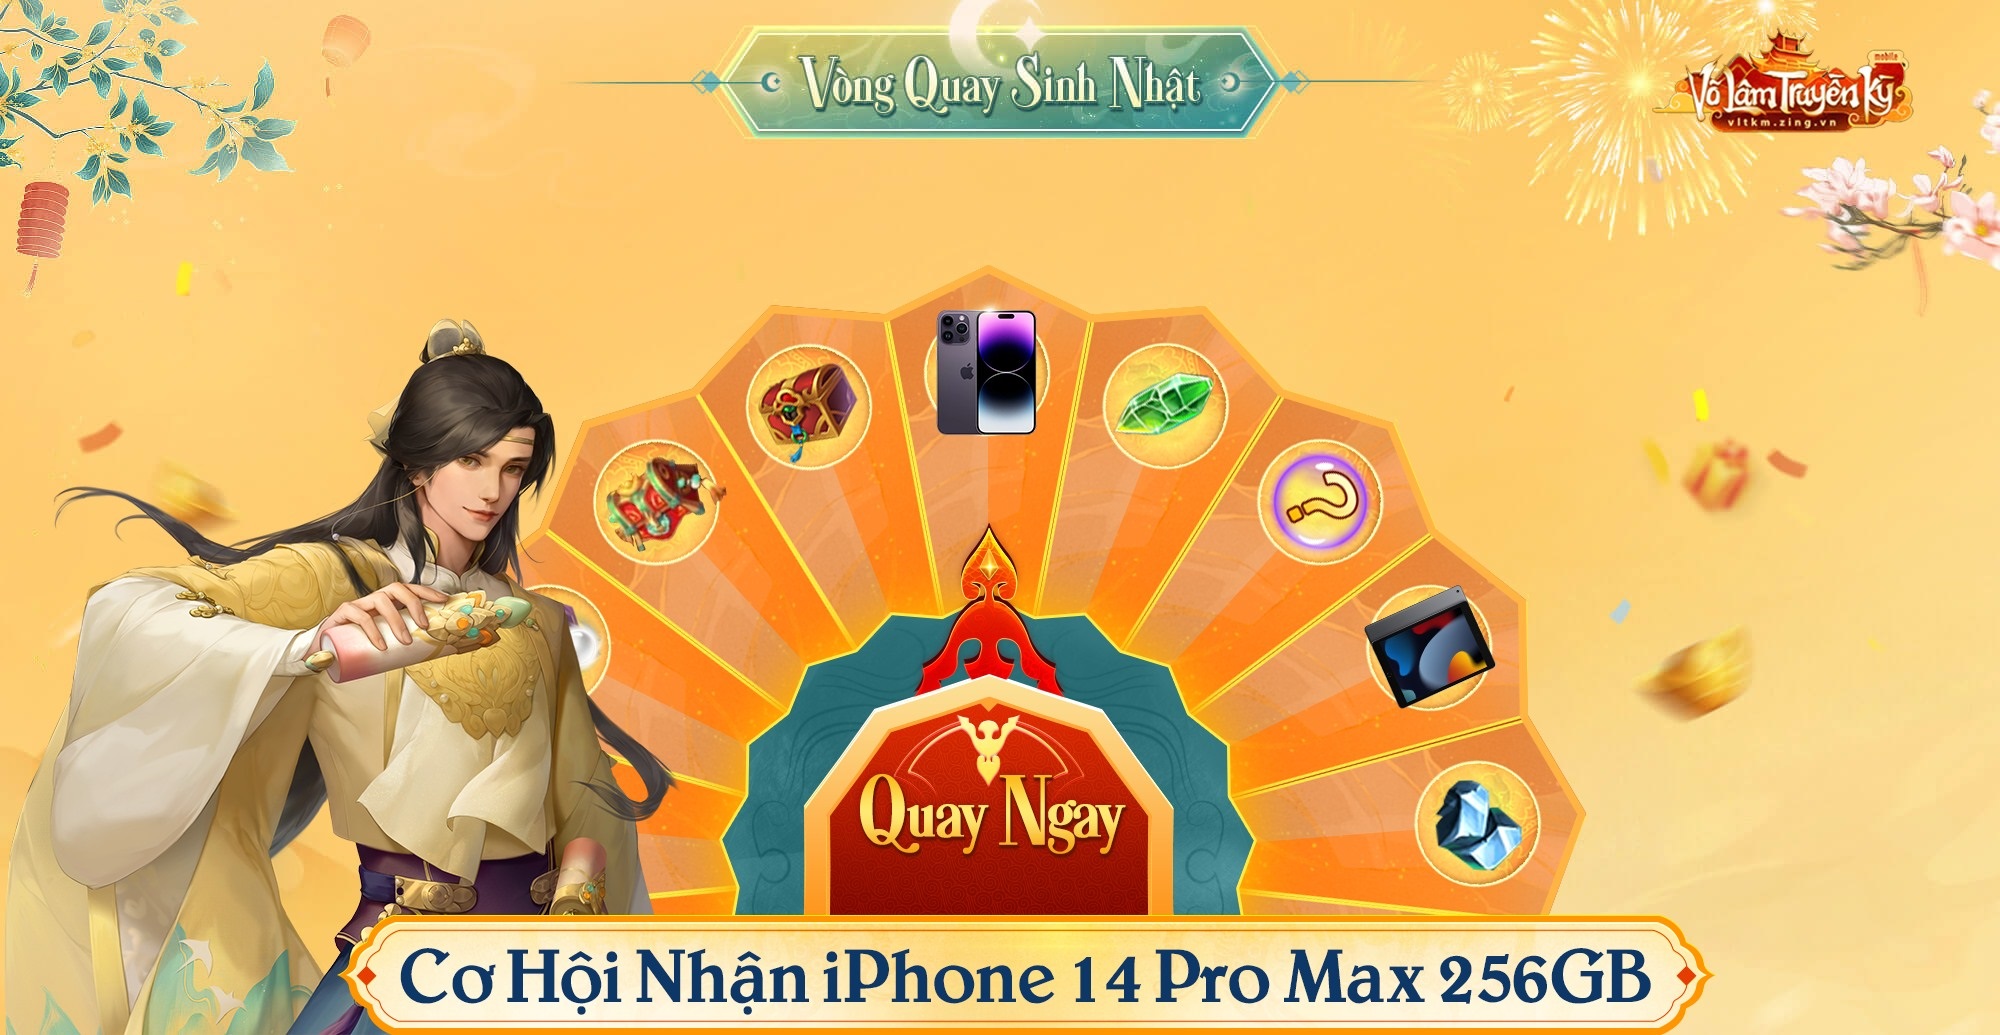 "Trầm trồ” trước quà tặng iPhone 14 Pro Max mừng sinh nhật của Võ Lâm Truyền Kỳ Mobile